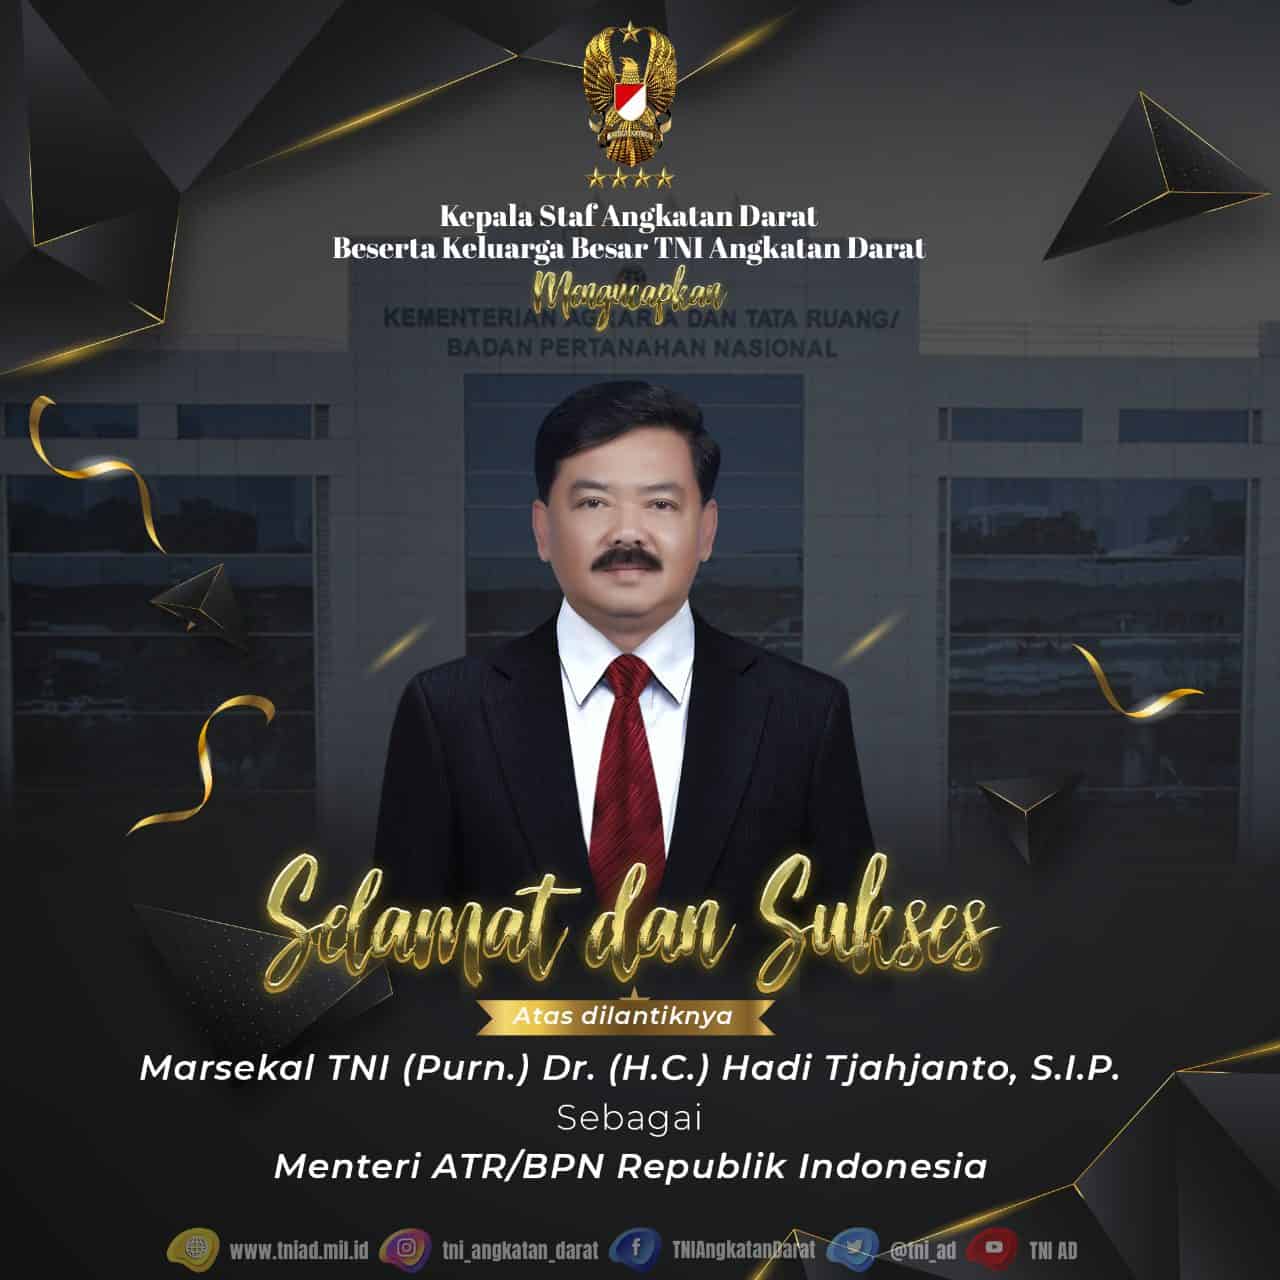 Selamat dan Sukses Atas dilantiknya Marsekal TNI Purn. Dr. (H.C.) Hadi Tjahjanto, S.I.P. Sebagai Menteri ATR/BPN Republik Indonesia